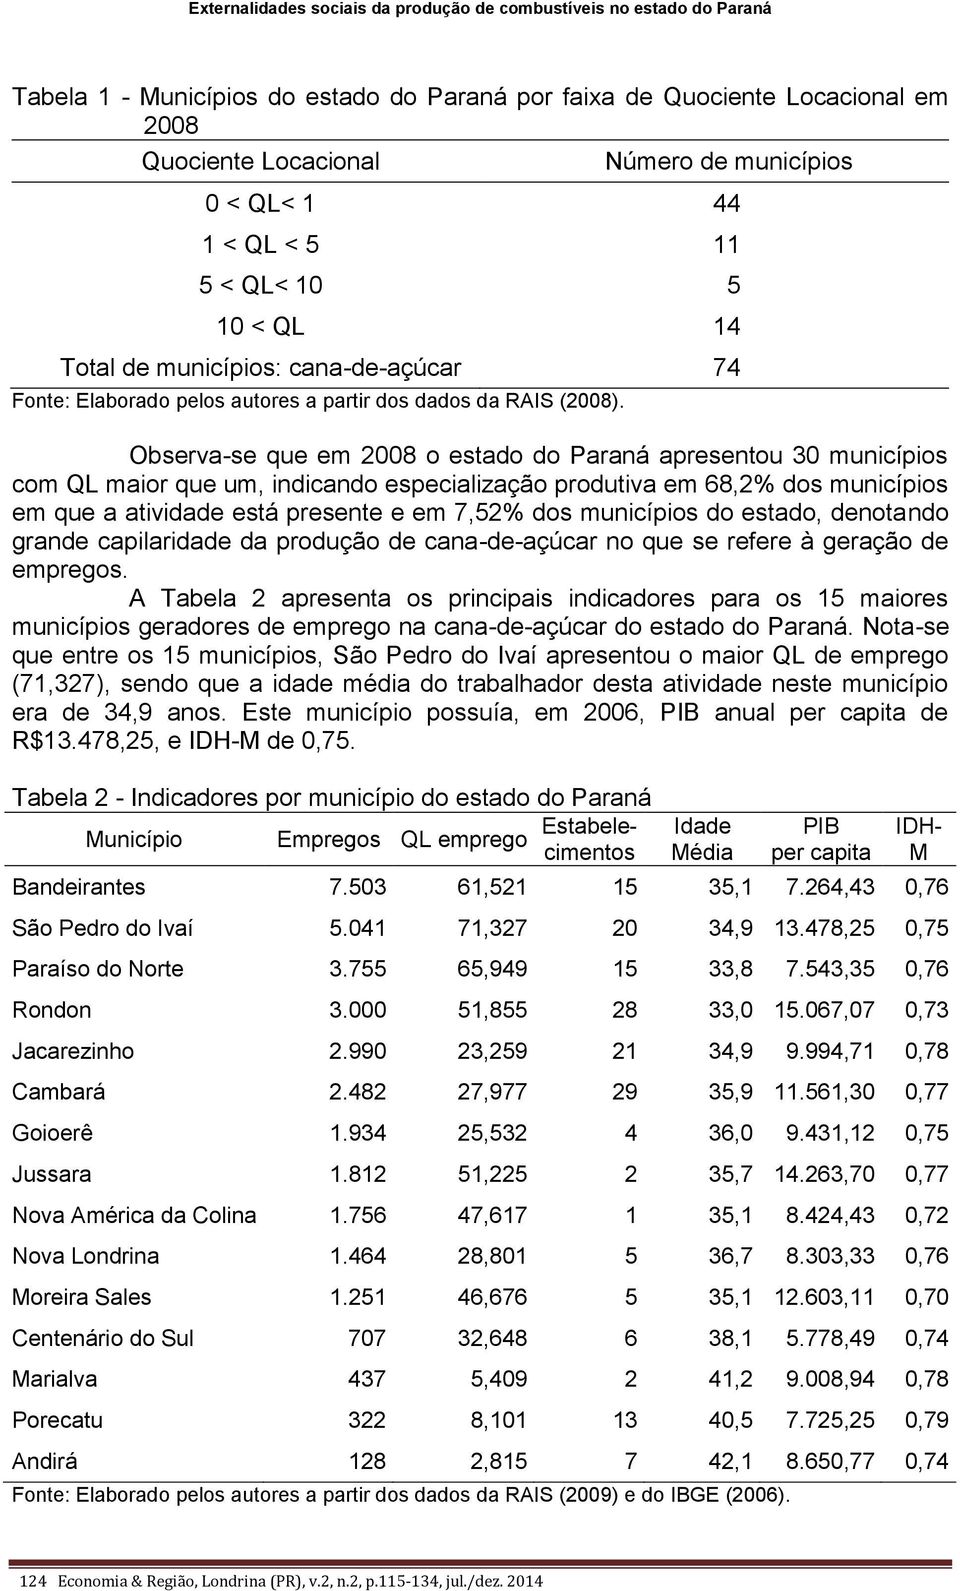 Observa-se que em 2008 o estado do Paraná apresentou 30 municípios com QL maior que um, indicando especialização produtiva em 68,2% dos municípios em que a atividade está presente e em 7,52% dos